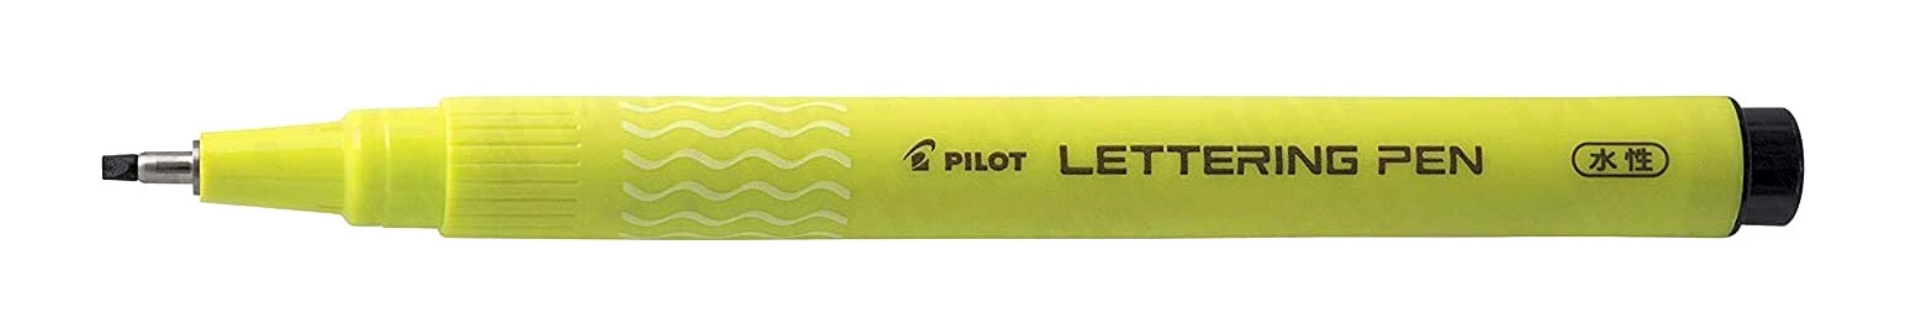 Pilot Lettering Pen